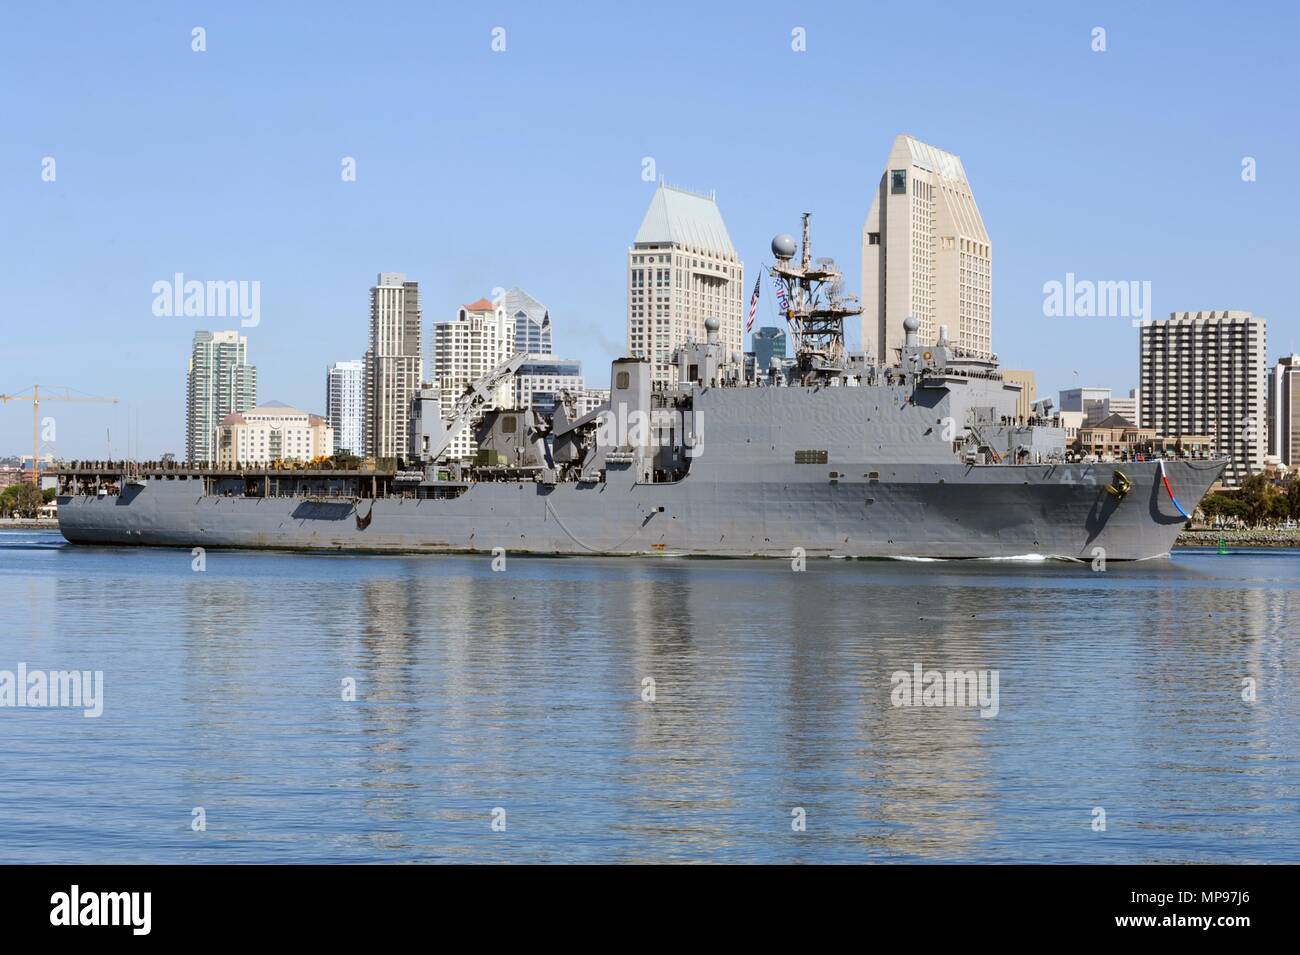 Die US-Marine Whidbey Island-Klasse amphibische Landung dock Schiff USS Comstock kommt an der Naval Base San Diego Februar 25, 2015 in San Diego, Kalifornien. (Foto von Rosalie Chang über Planetpix) Stockfoto